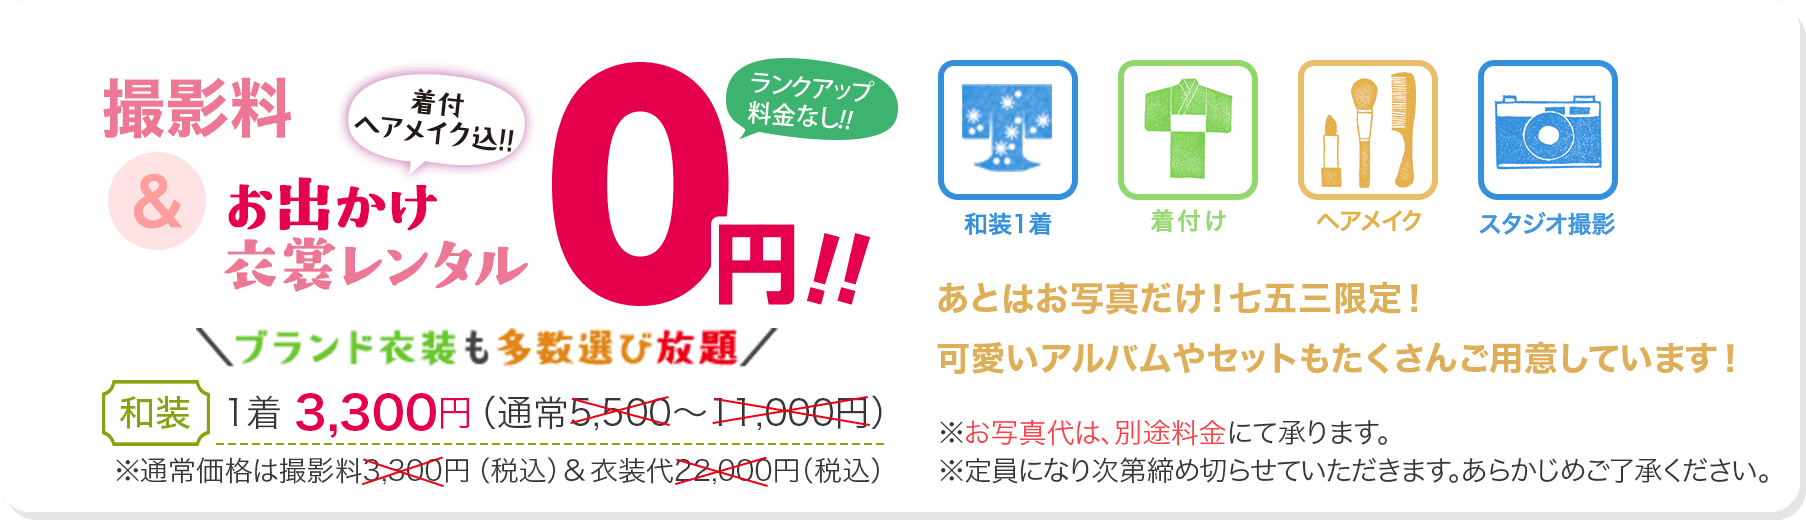 七五三キャンペーン! 撮影料+秋のお出かけ衣装レンタル(着付・ヘアメイク込) 0円!!